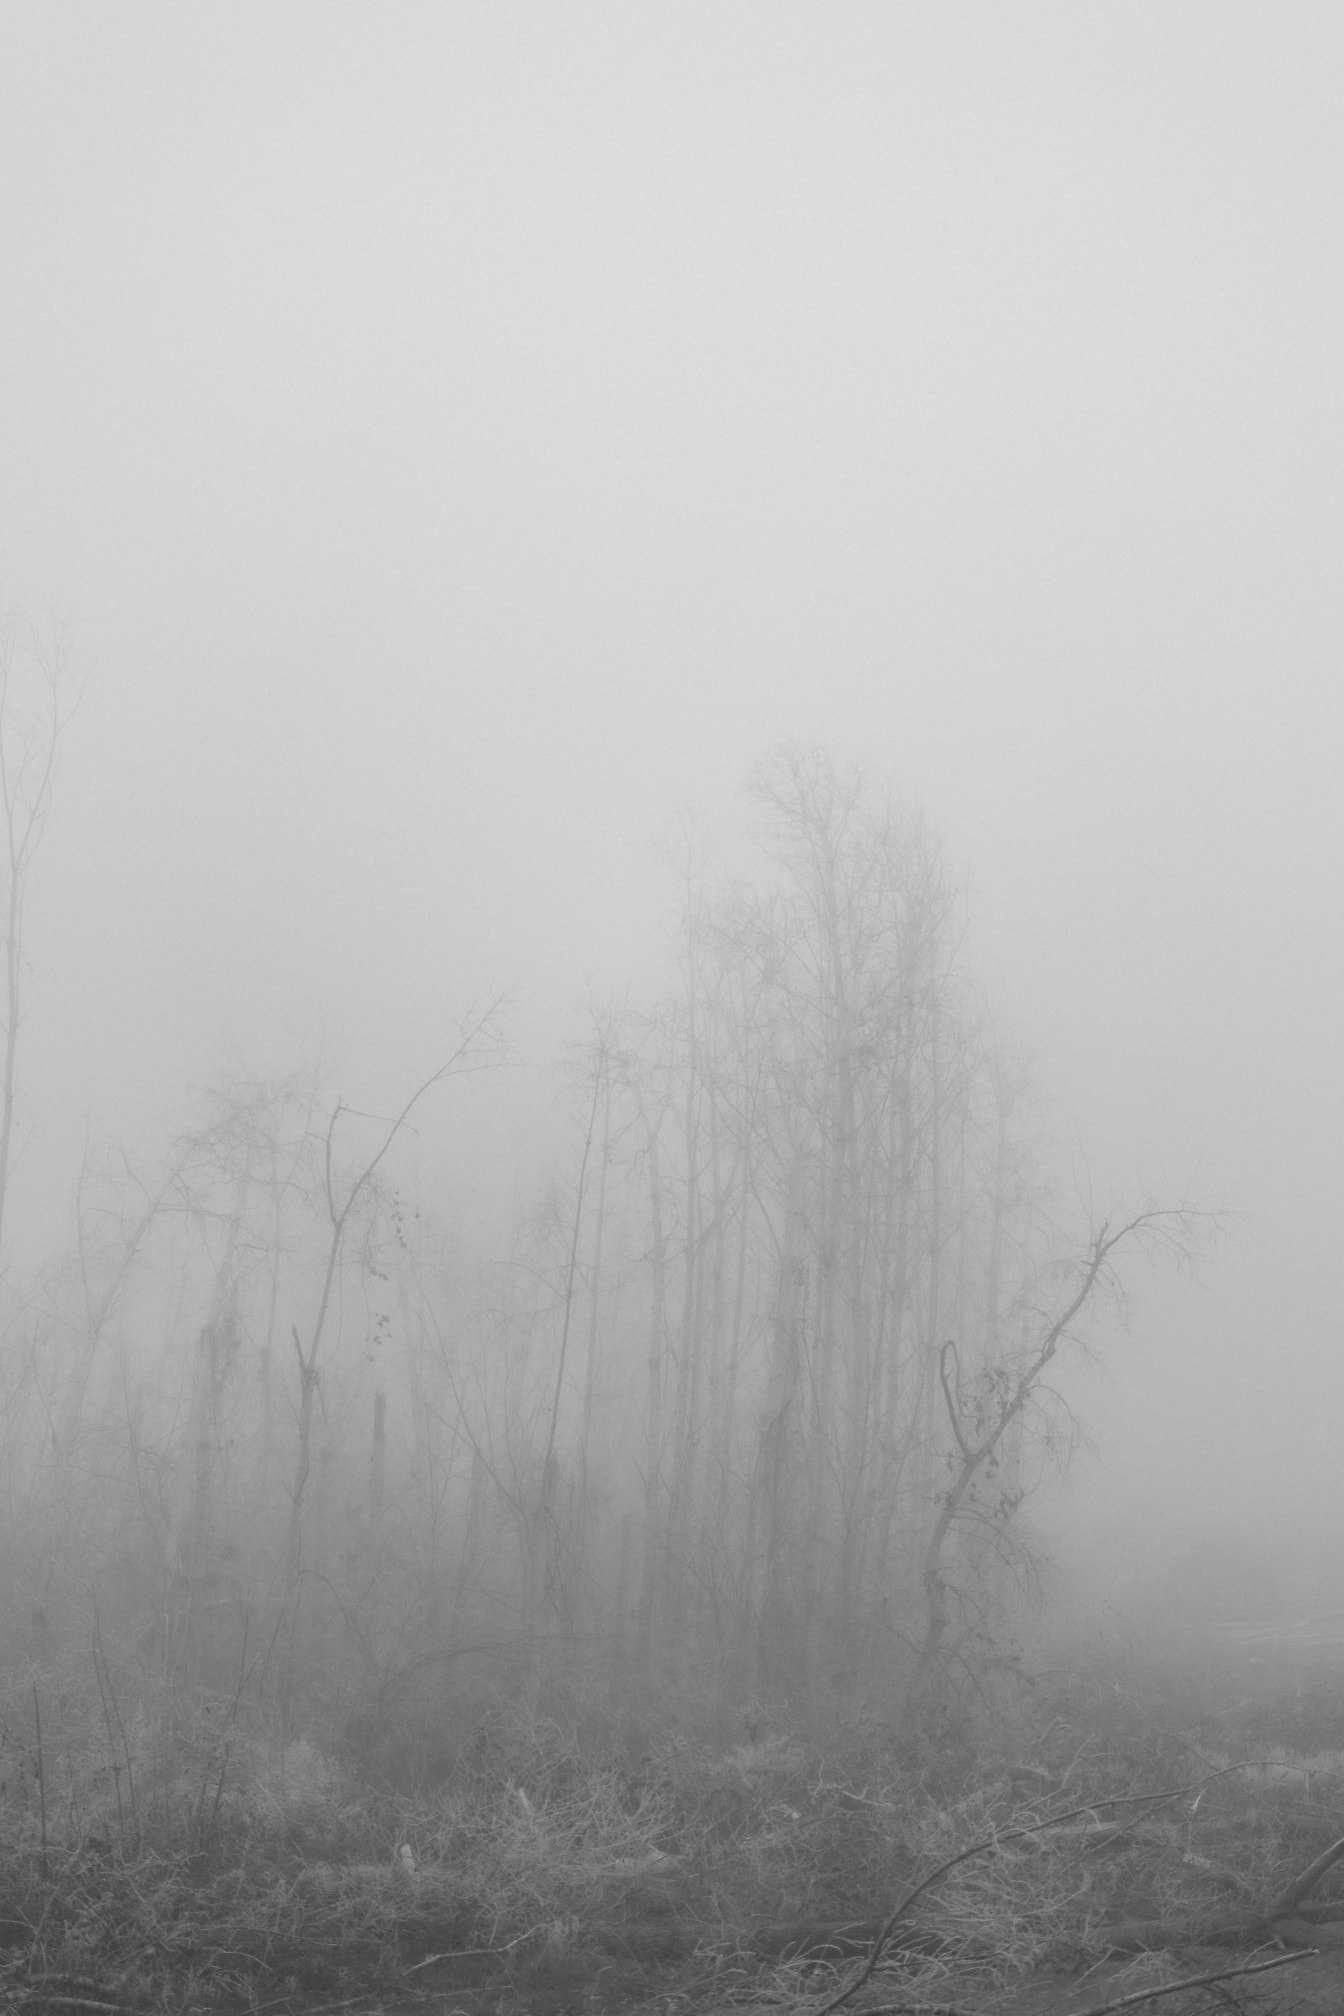 Jednobojna fotografija hladnih grana i grmlja u maglovitoj šumi